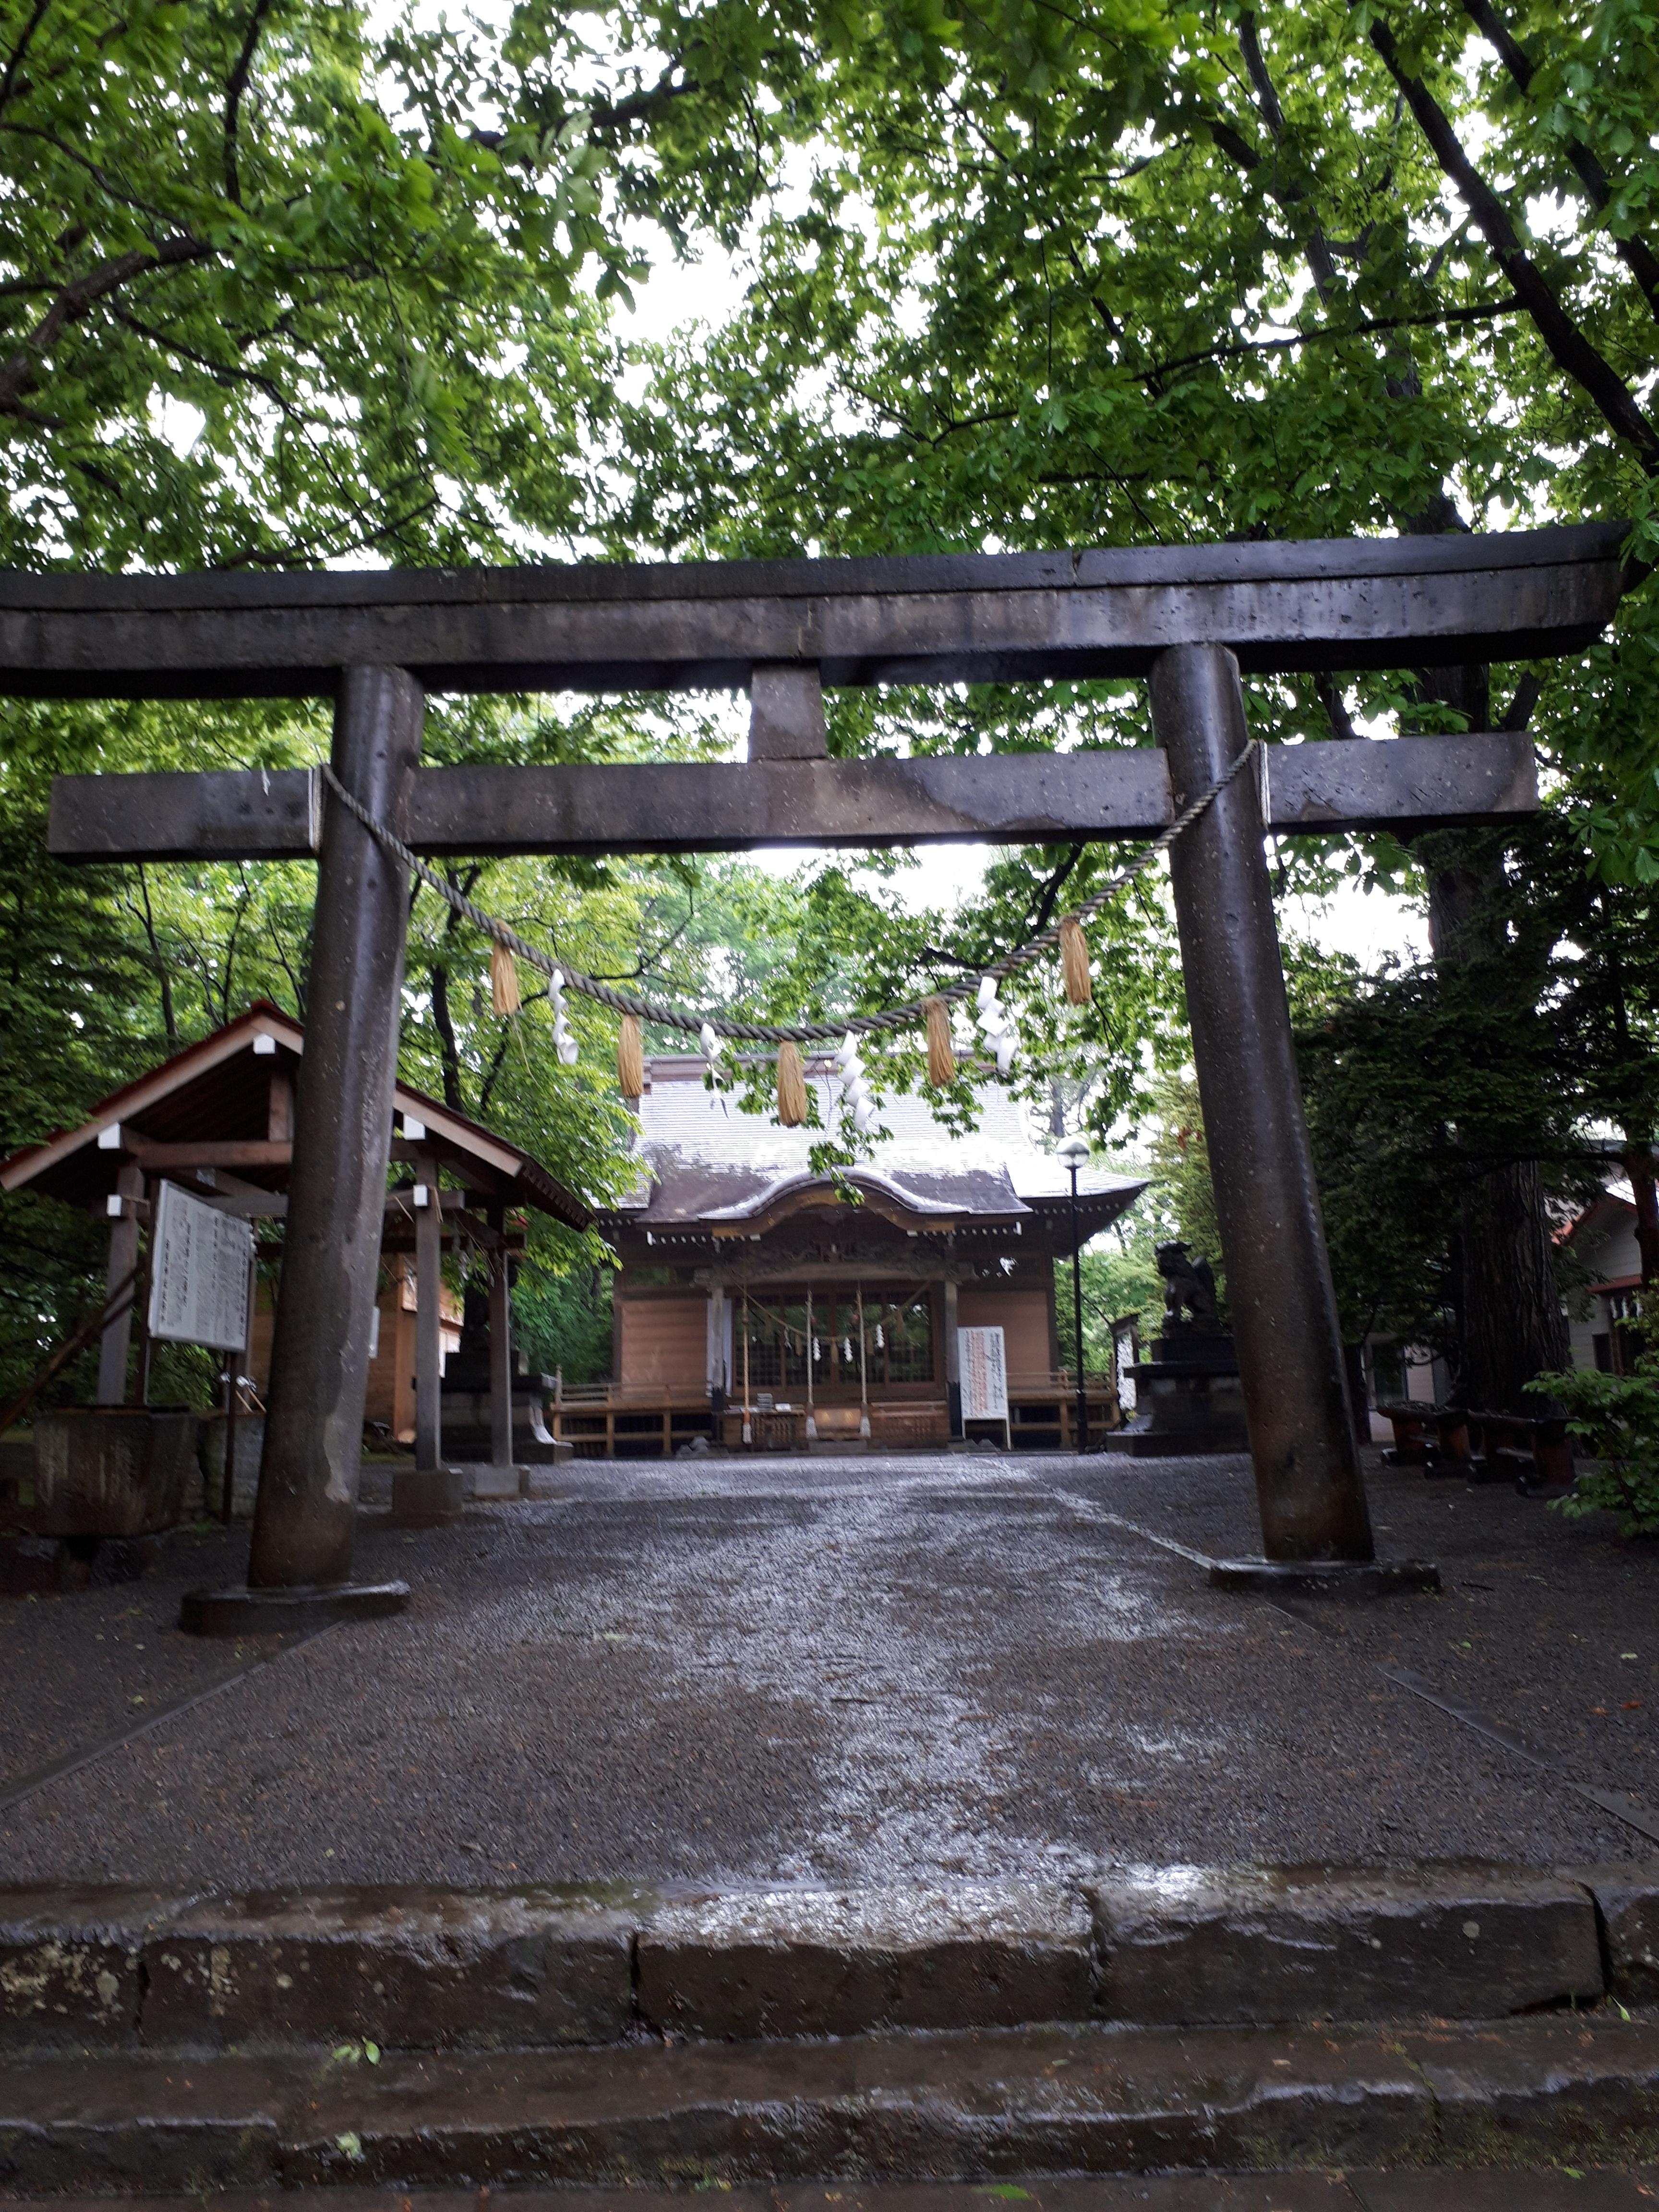 相馬神社 北海道澄川駅 の投稿 1回目 天神山の上にある神社です 天神藤見て神社に着くと ホトカミ